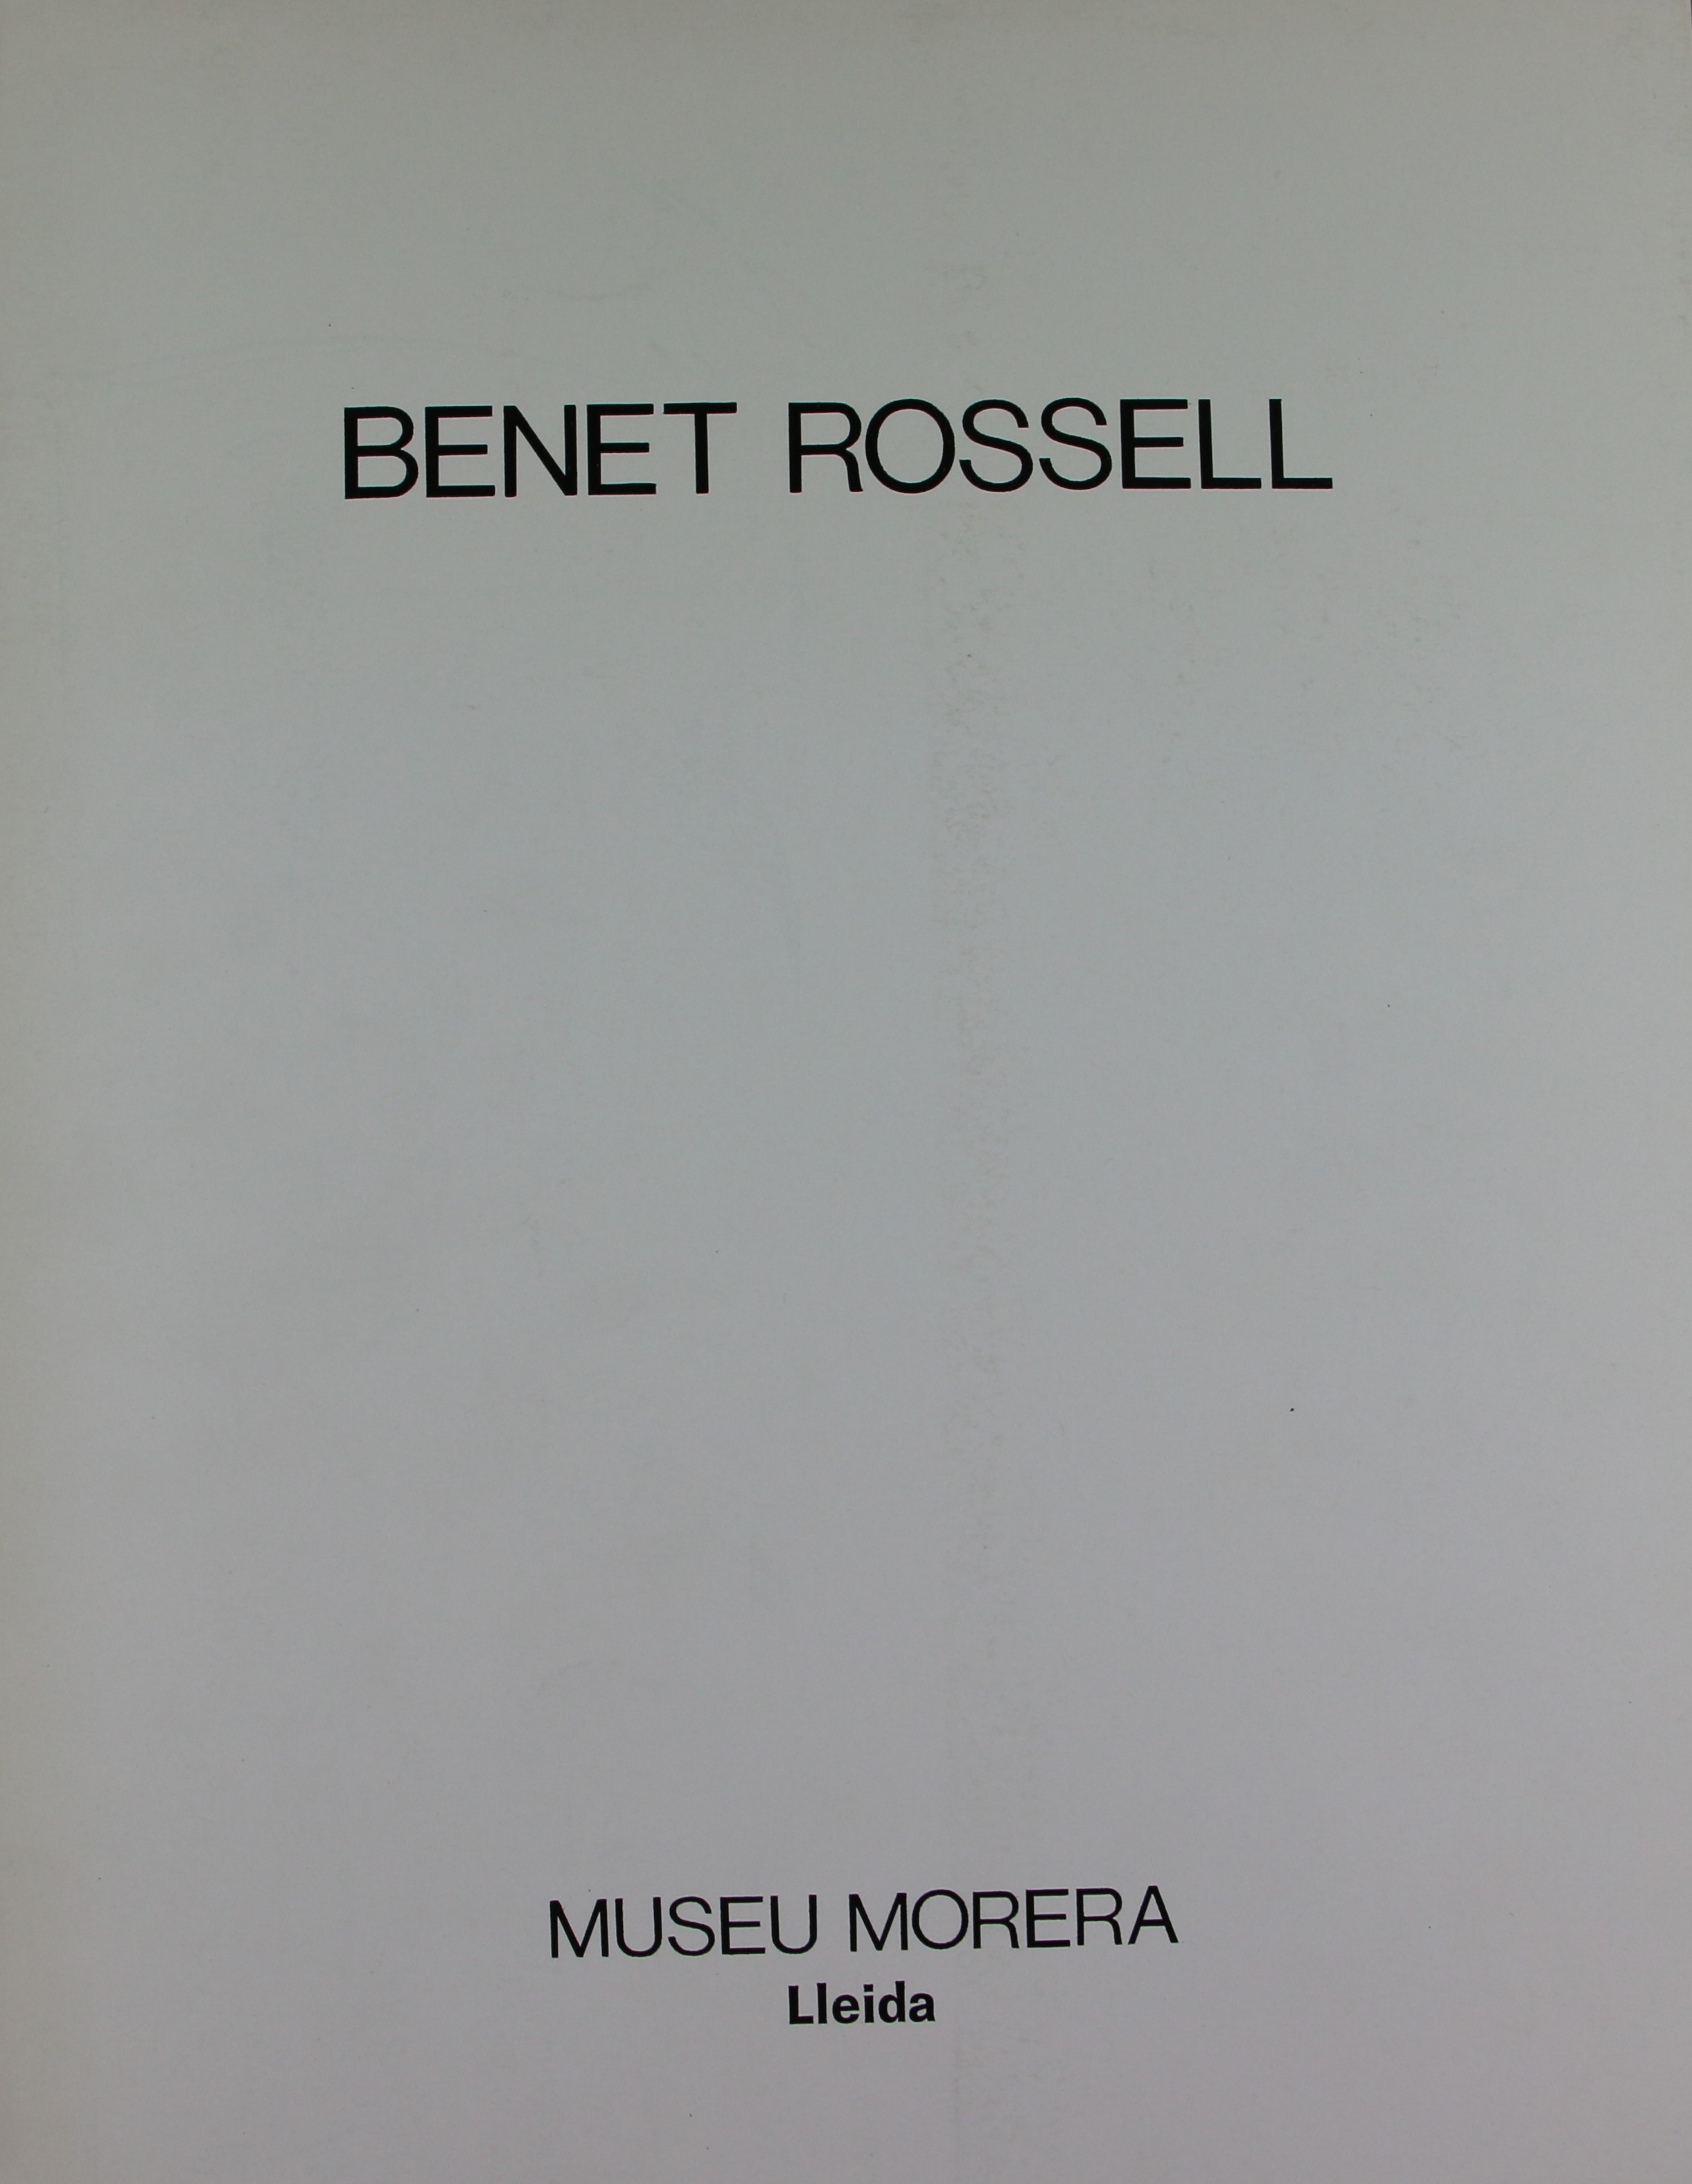 Benet Rossell